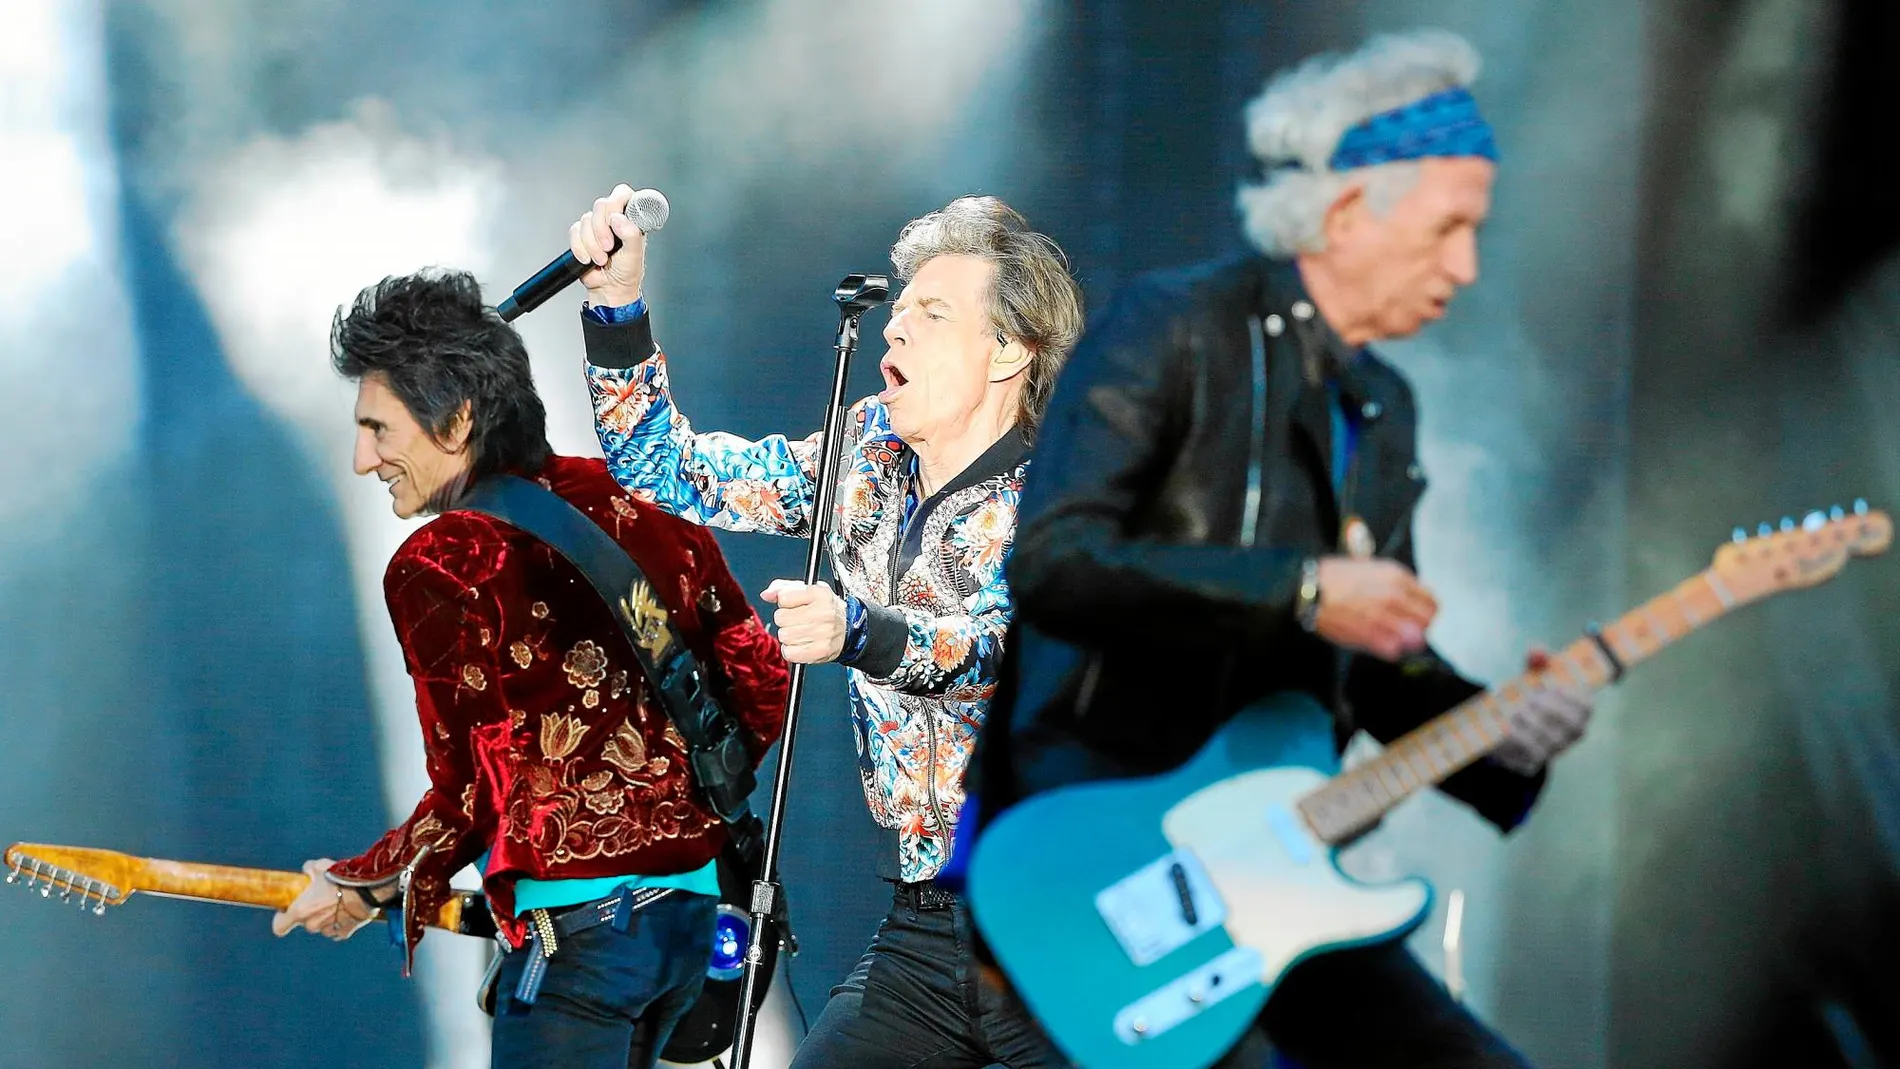 Los Rolling Stones, con Ronnie Wood, Mick Jagger y Keith Richards en la imagen, se formaron hace cinco décadas y mantienen su actividad con rigor empresarial